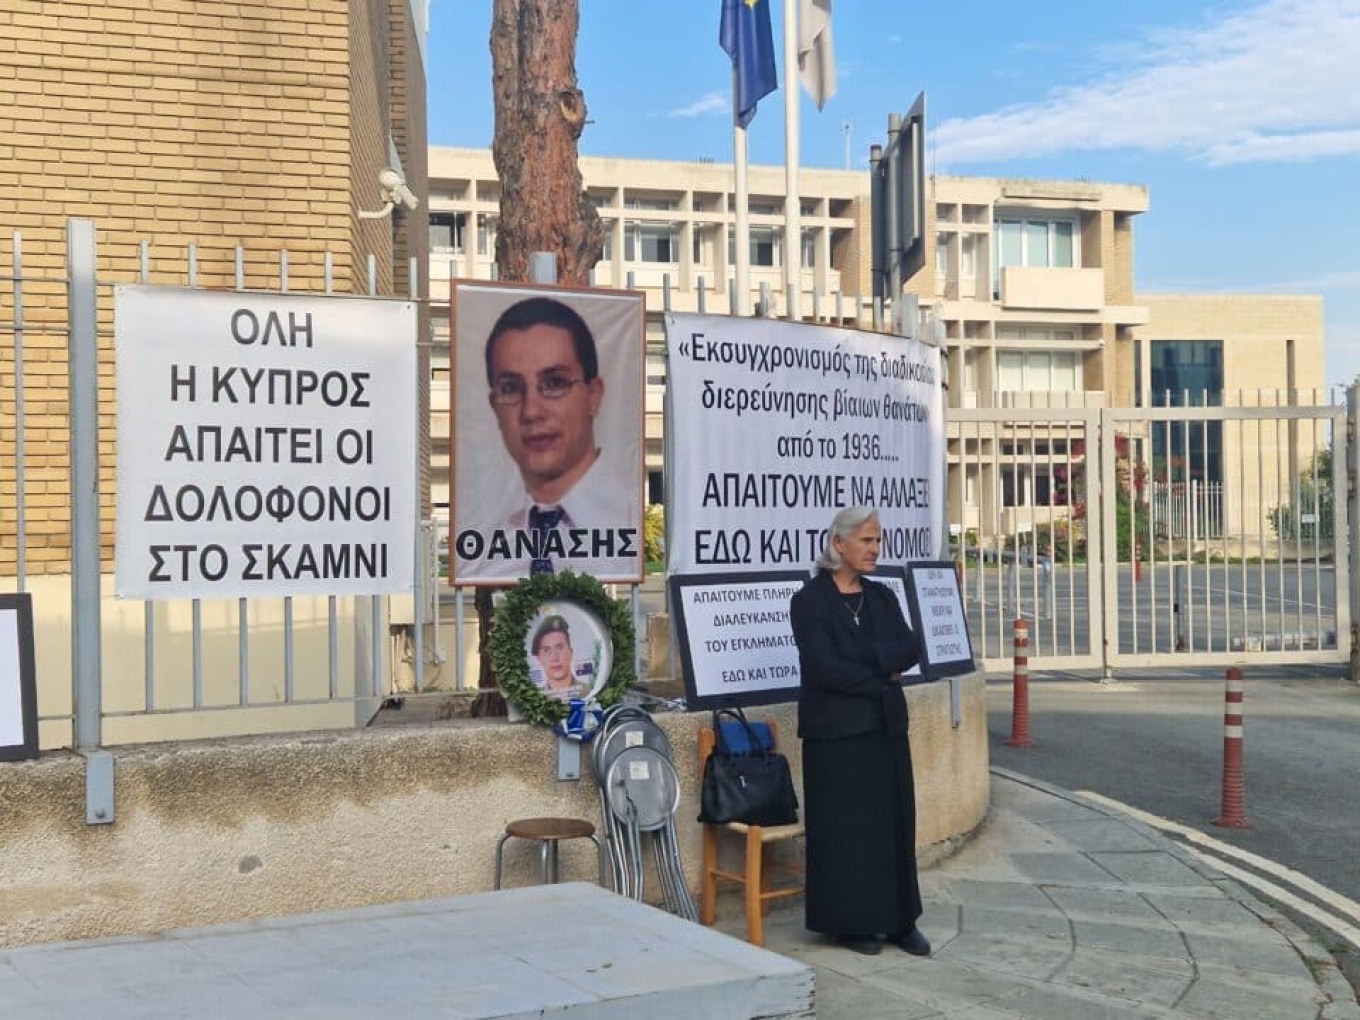 Κύπρος: Διώξεις από την οικογένεια του 26χρονου στρατιώτη - Η αυτοκτονία αποδείχθηκε δολοφονία